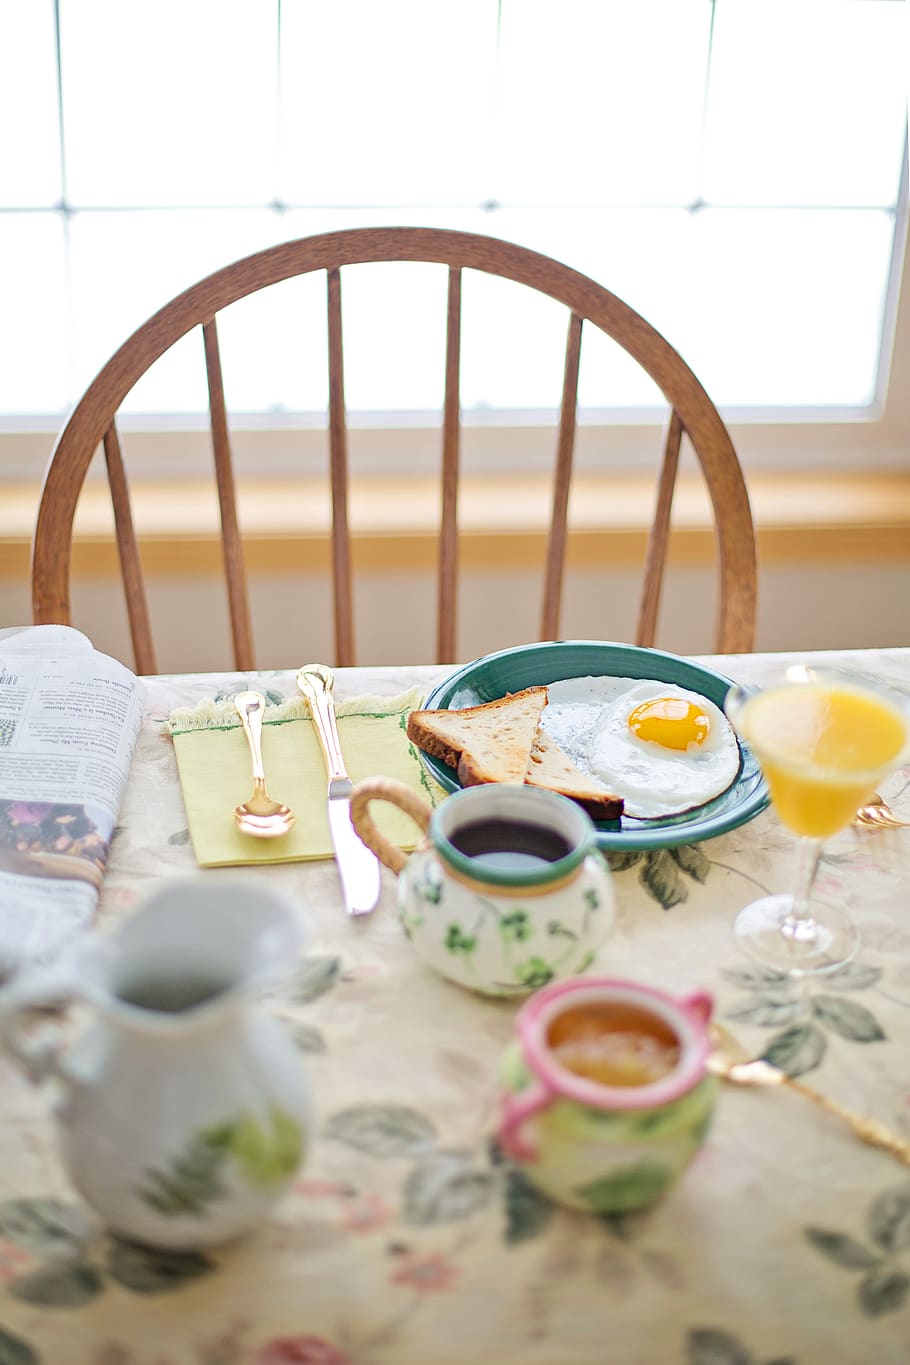 sarapan, telur goreng, kopi, meja, pengaturan meja, makanan, pagi, makan, sehat, protein